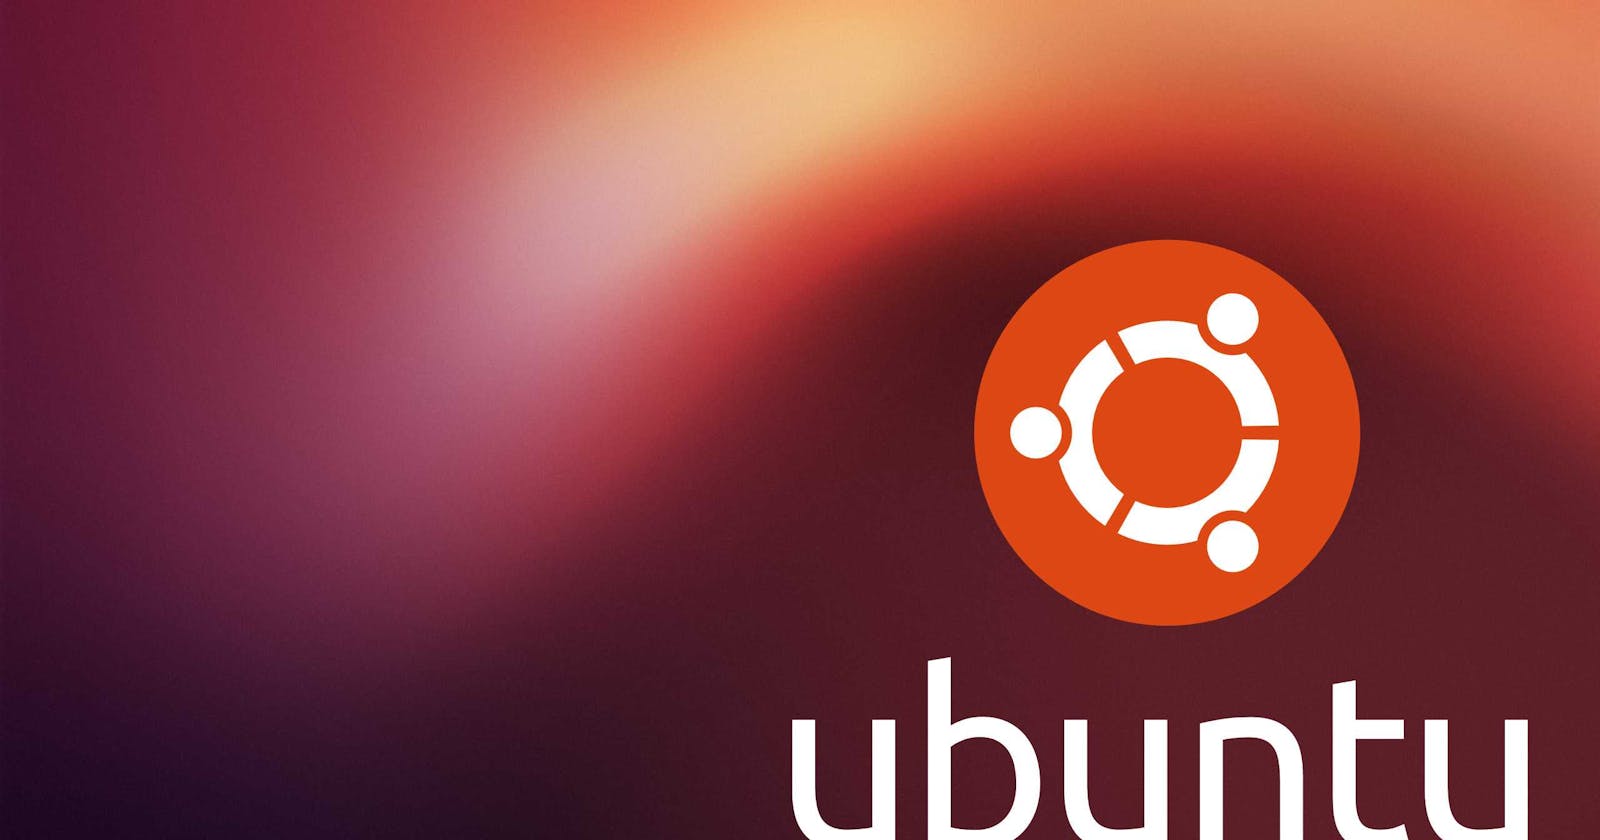 Install Ubuntu using VirtualBox